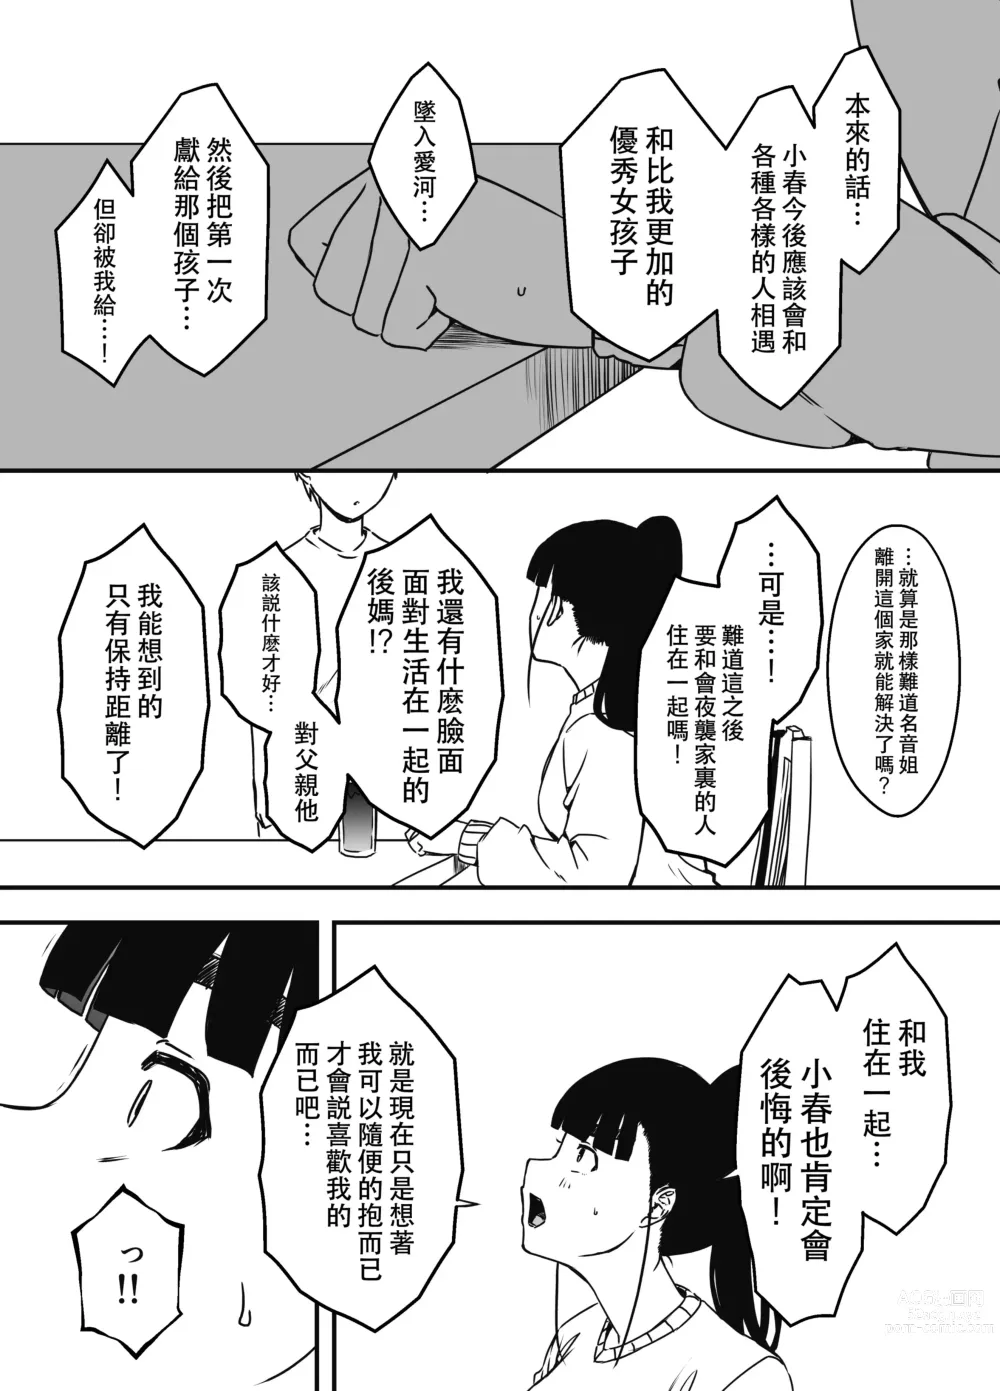 Page 10 of doujinshi Giri no Ane to no 7-kakan Seikatsu - 5